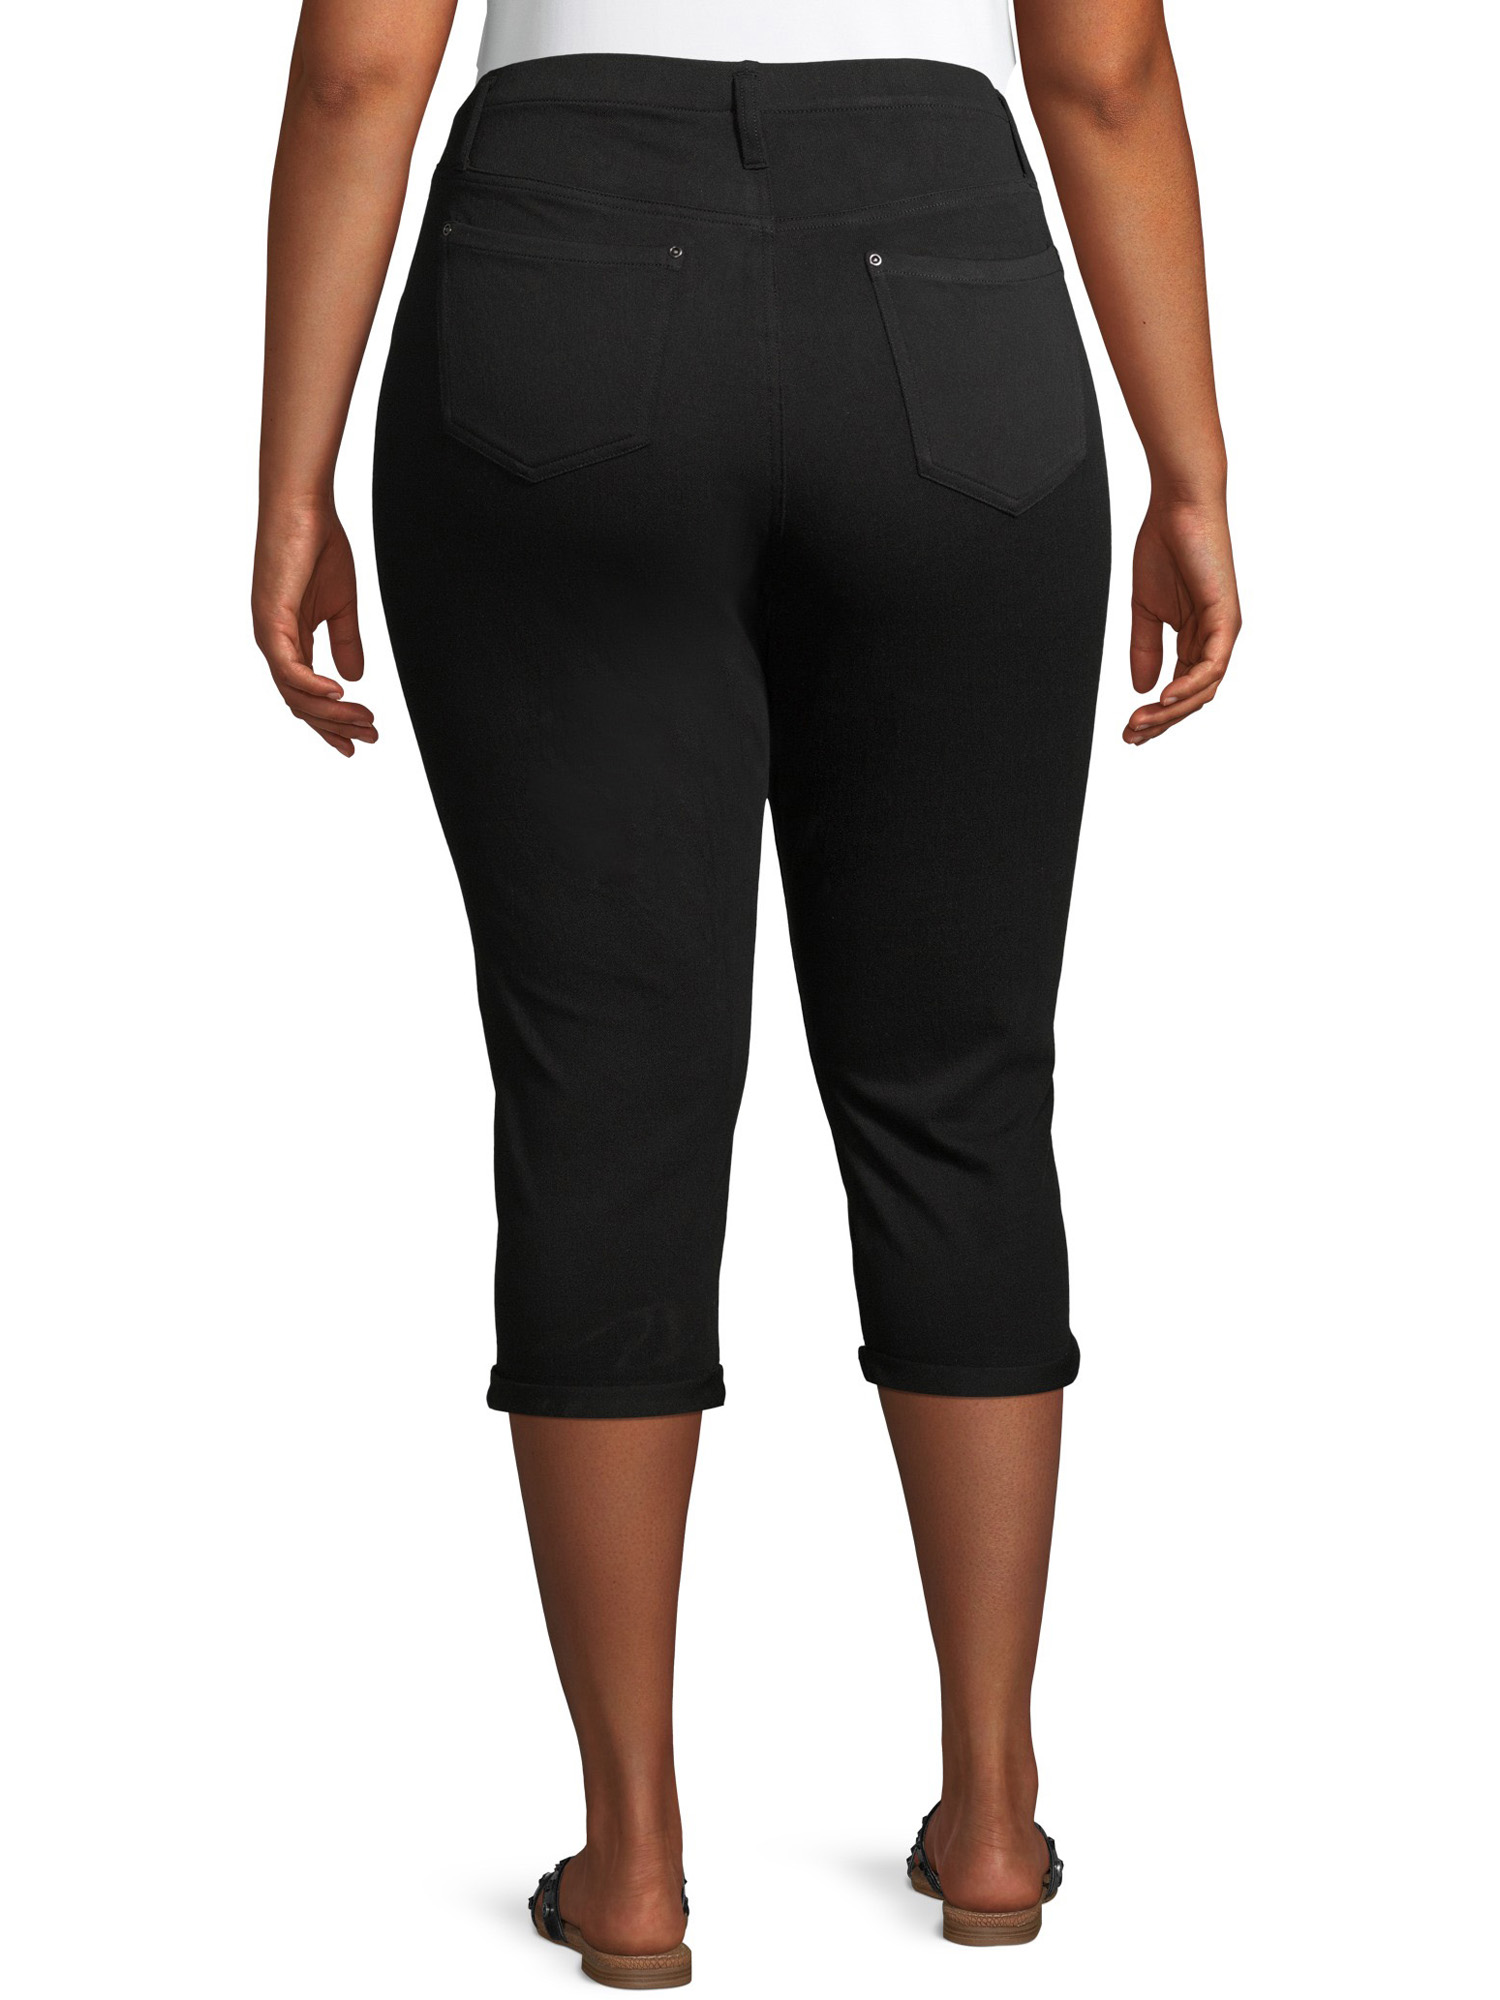 Terra & Sky Women's Plus Size Pull on Denim Capri Jeggings - image 4 of 9